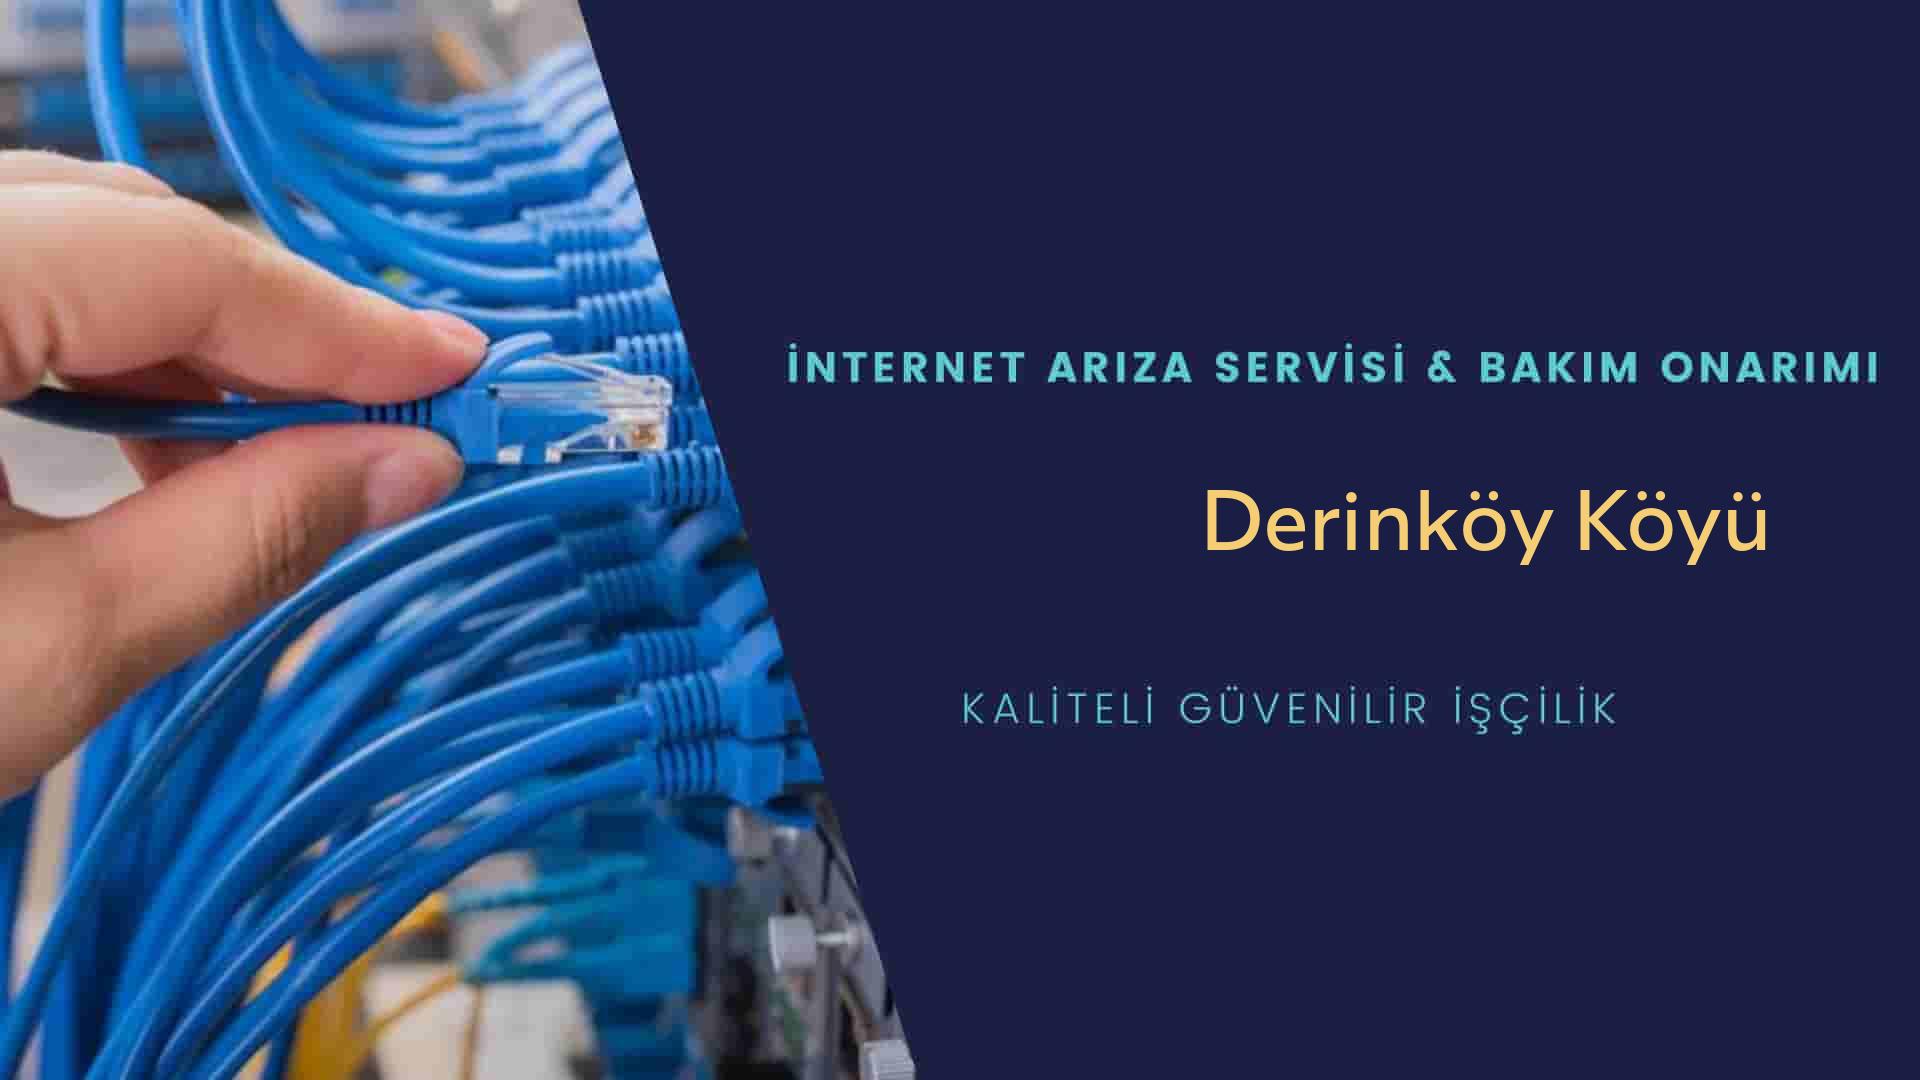 Derinköy Köyü internet kablosu çekimi yapan yerler veya elektrikçiler mi? arıyorsunuz doğru yerdesiniz o zaman sizlere 7/24 yardımcı olacak profesyonel ustalarımız bir telefon kadar yakındır size.